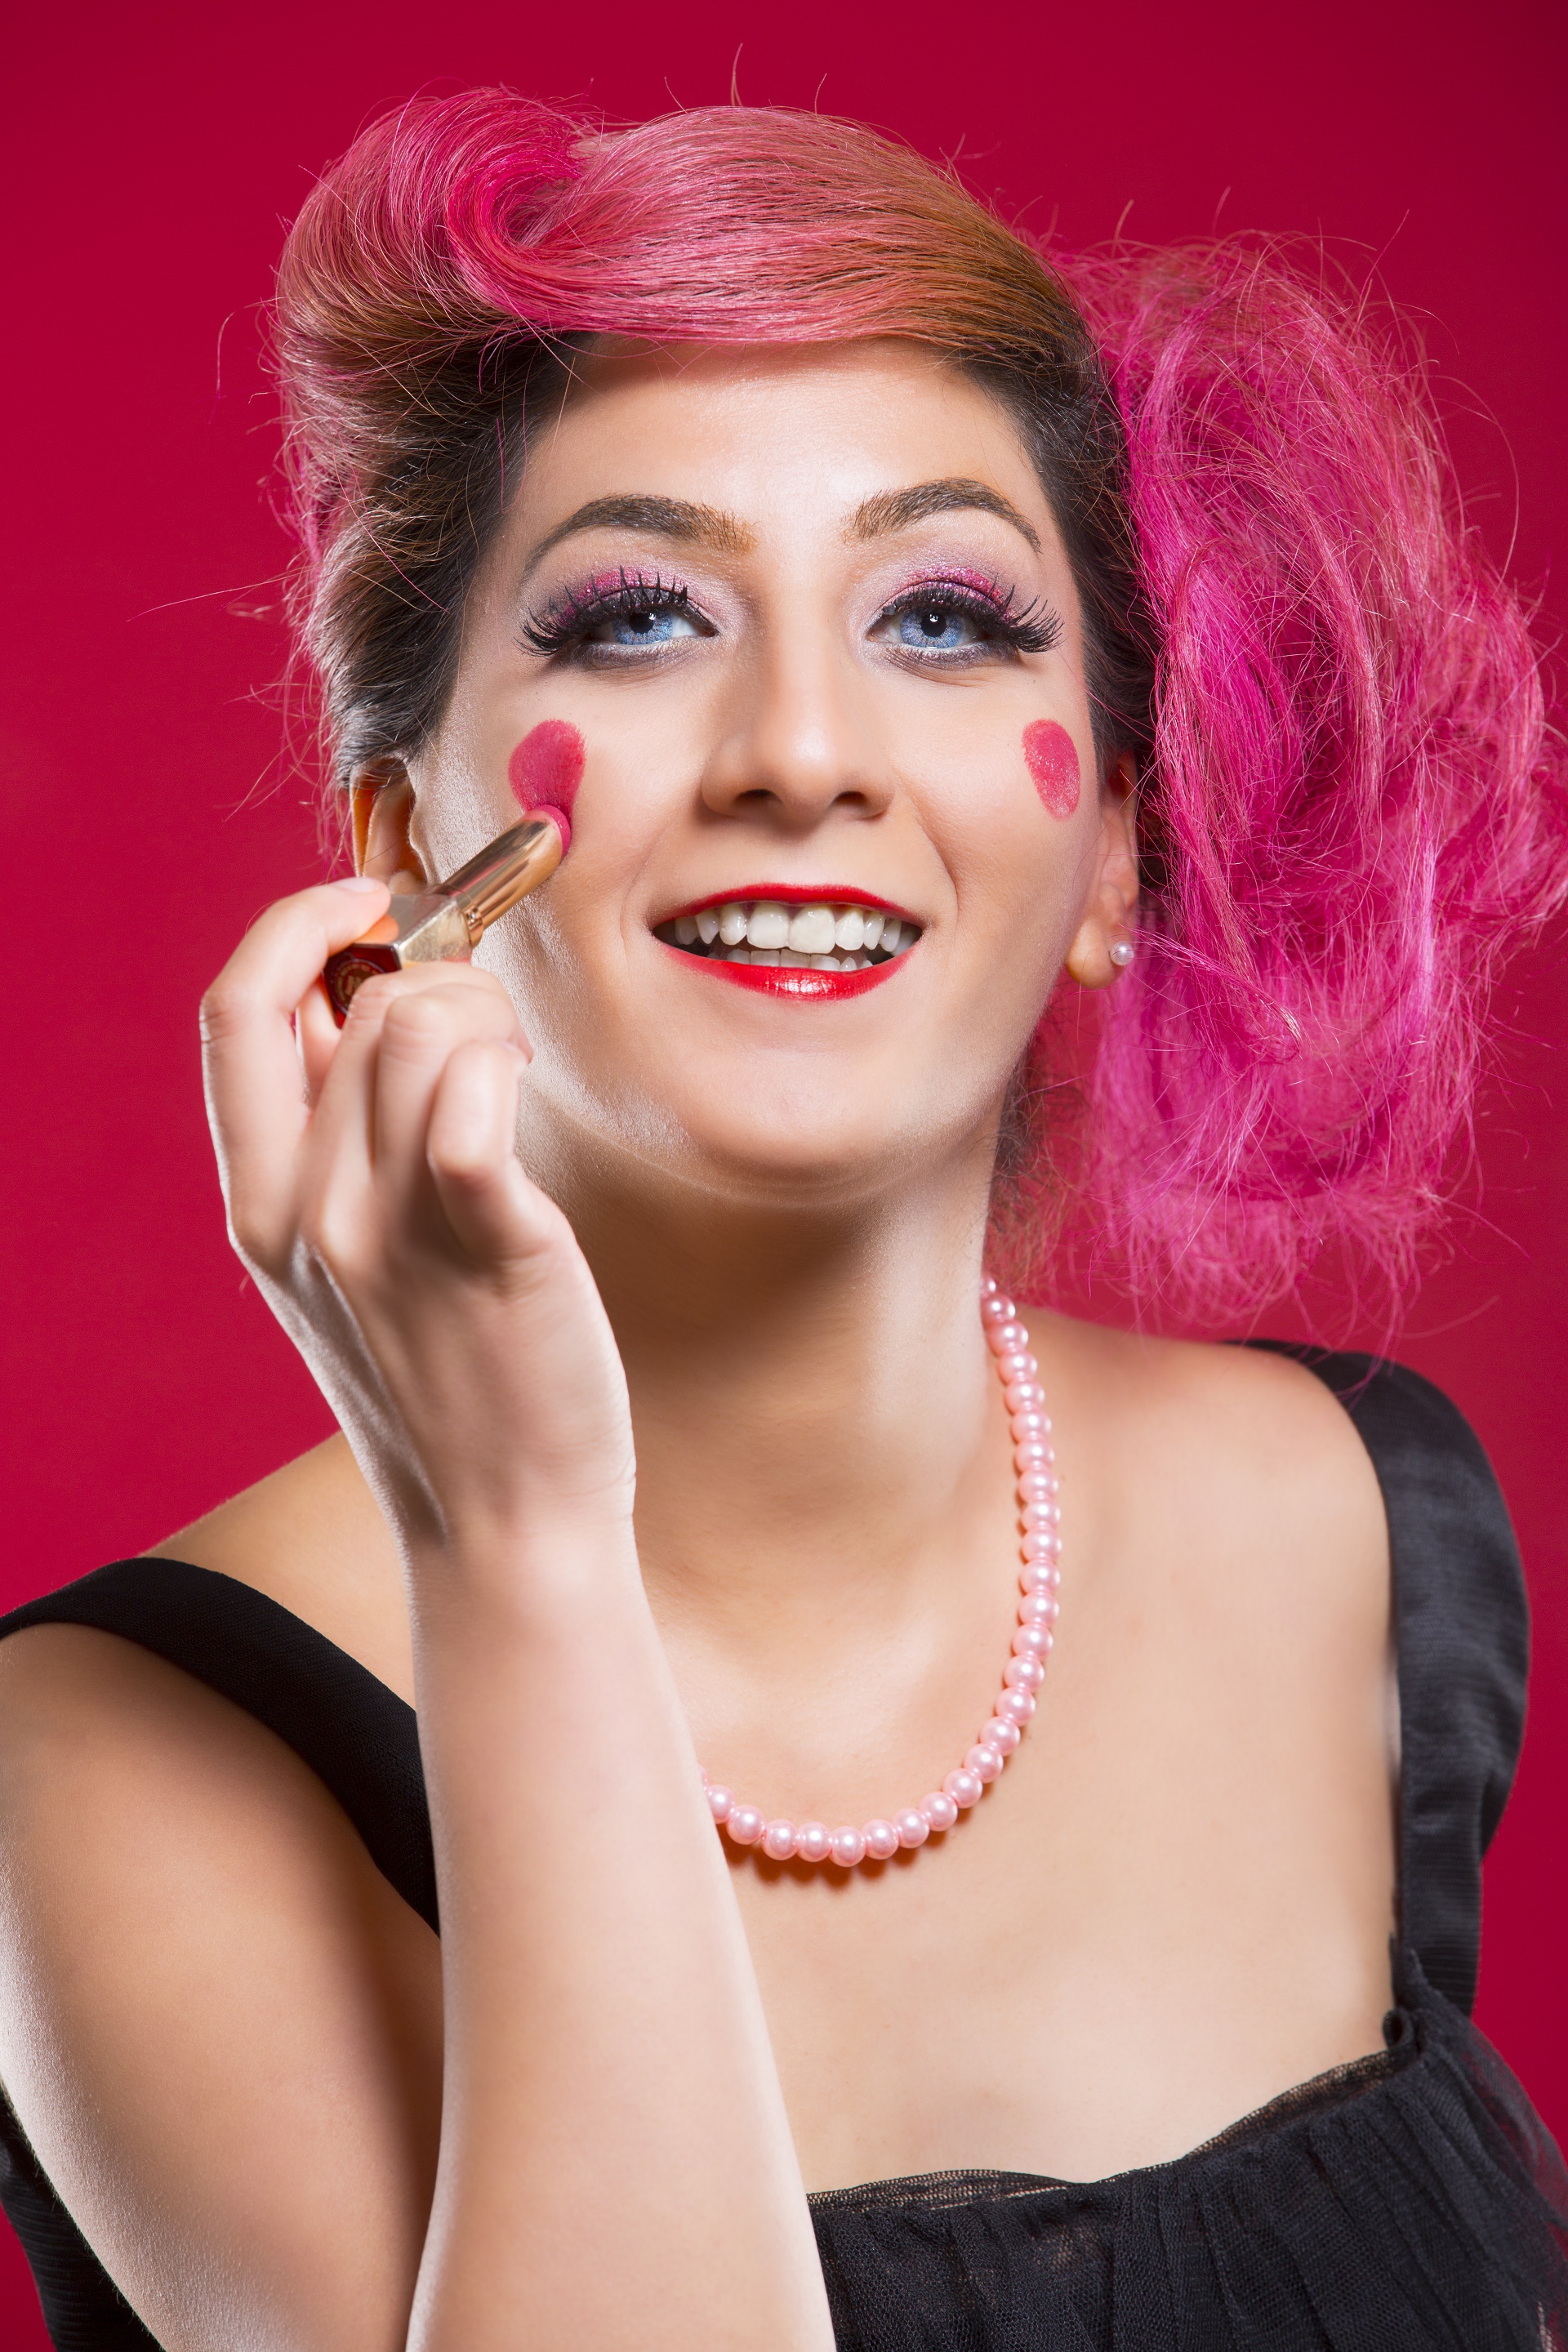 Celebrity Hairstyle: Roni Jallous. Fashion Designer: Alwedad Novelties. Makeup: Naeema. |Roni Jallous Team| |YamaahAgency|